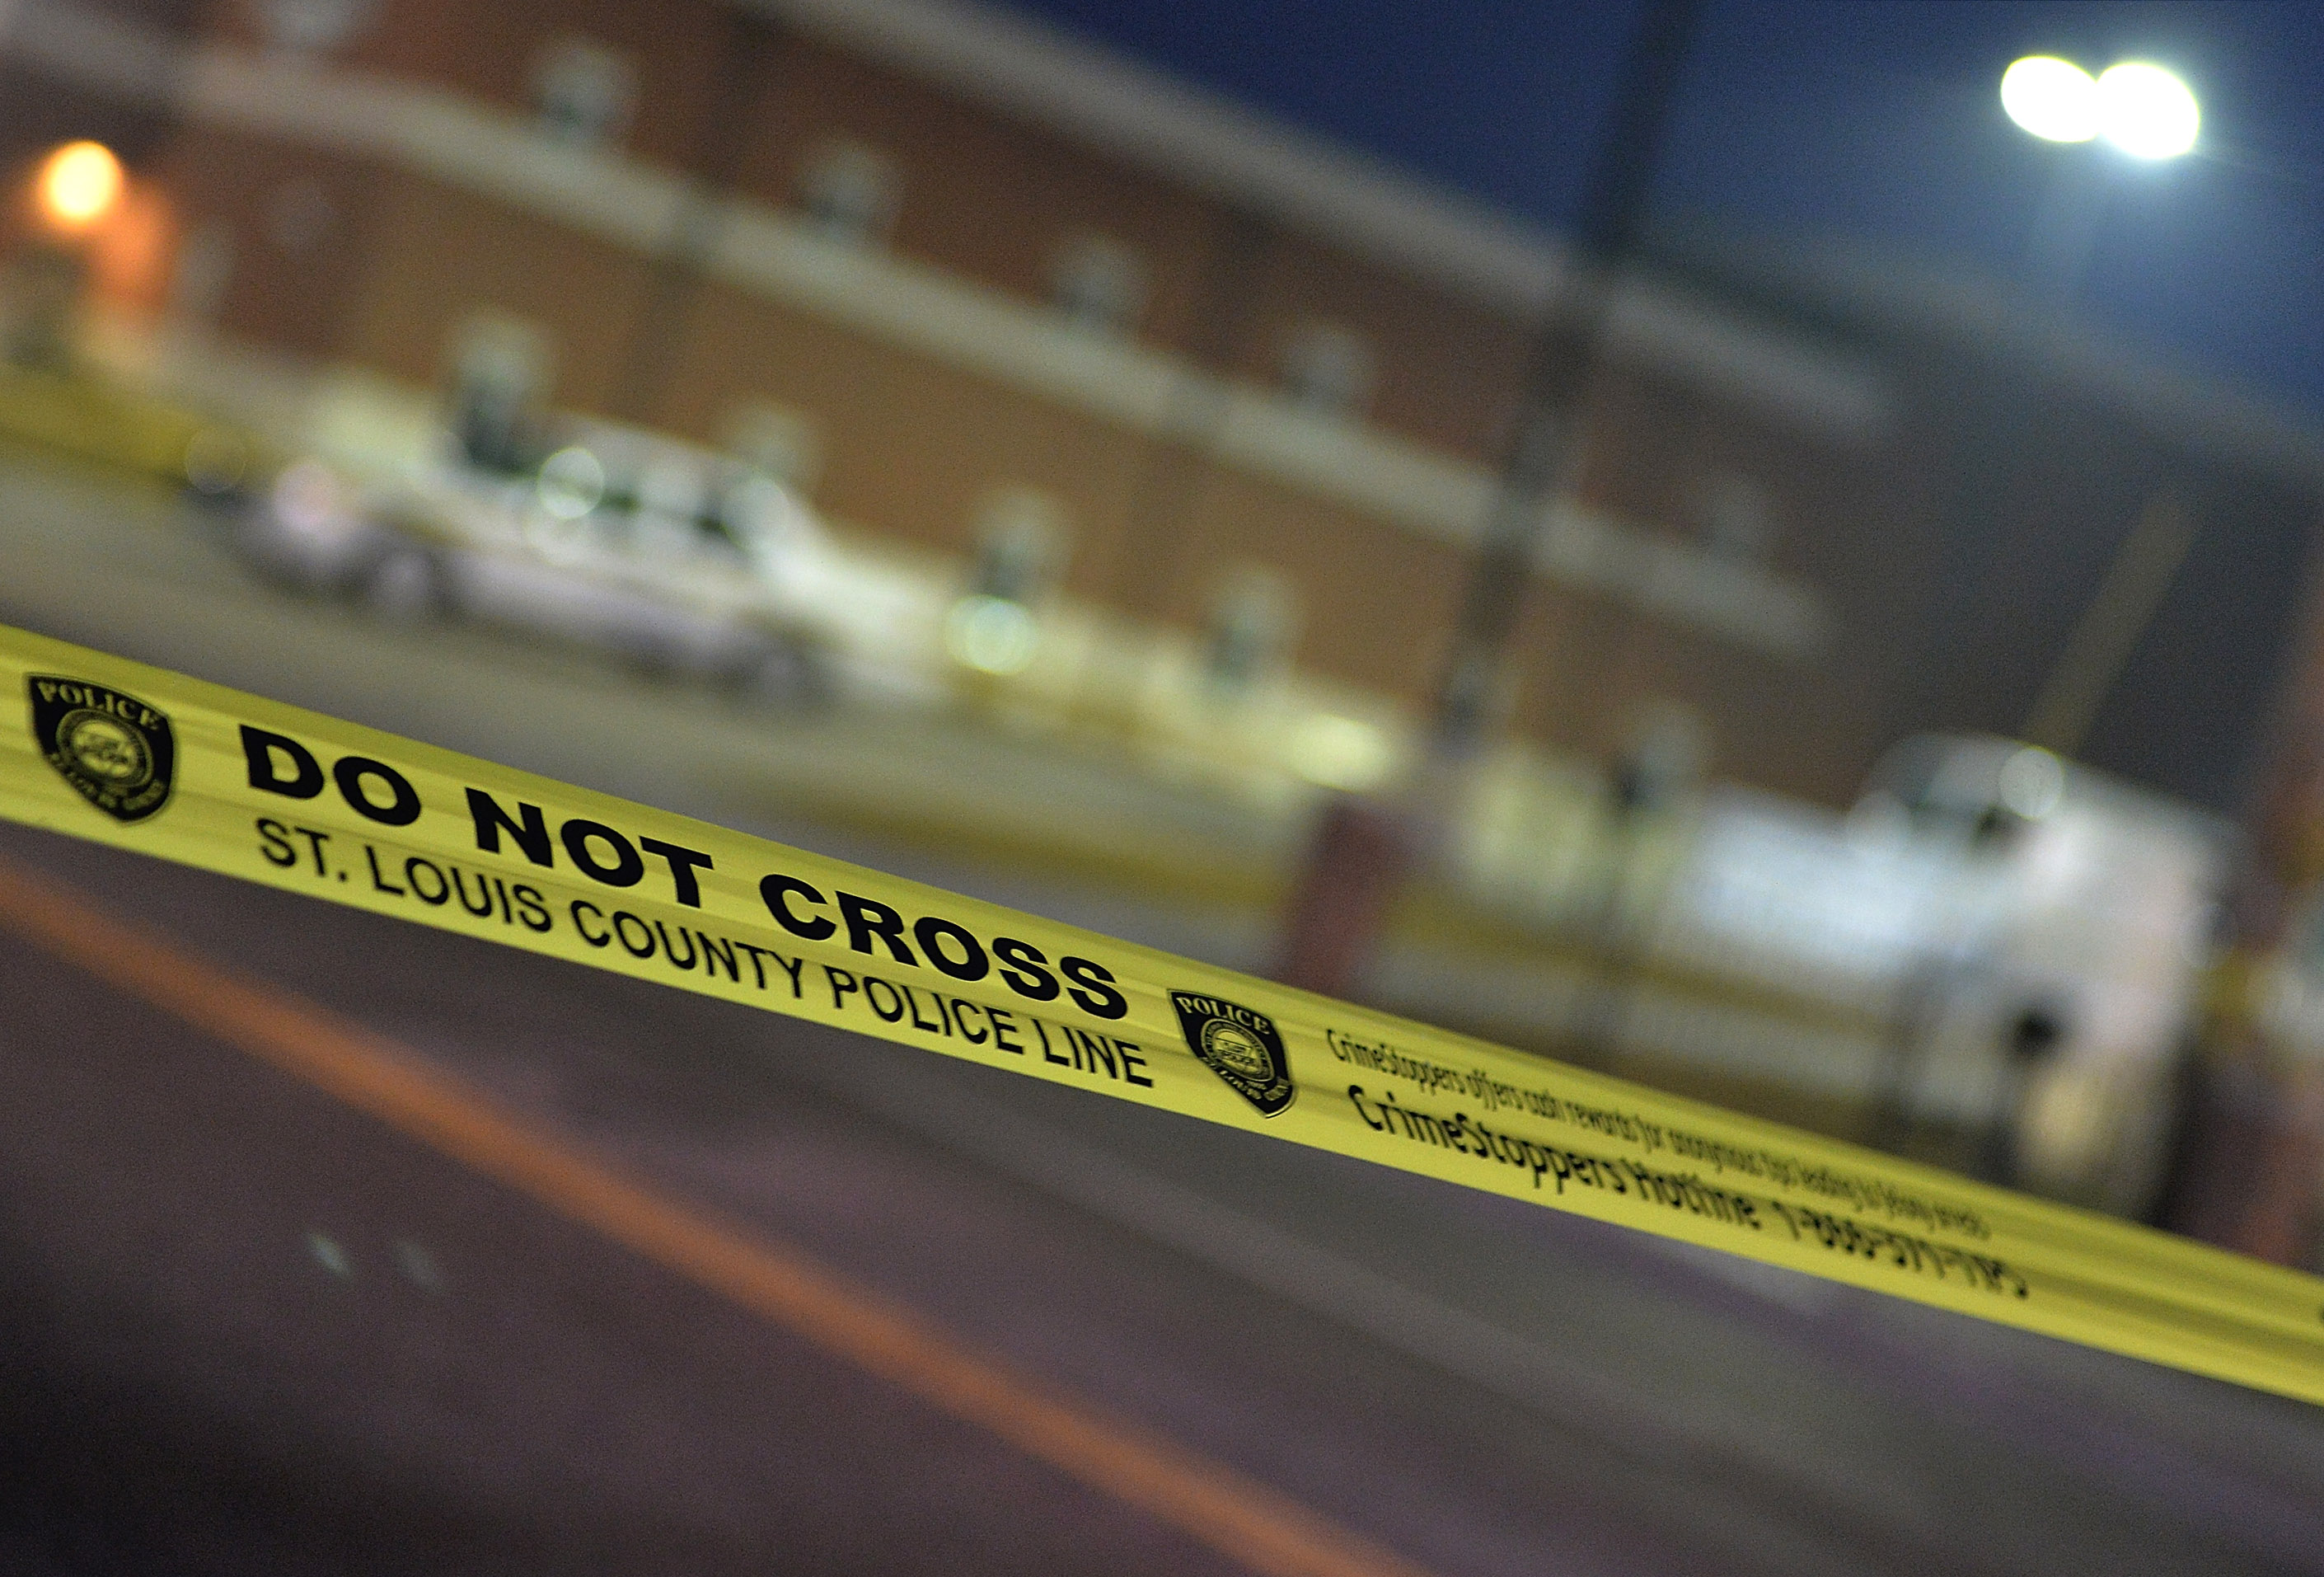 UPDATE: Schießerei in US-Einkaufszentrum – sechs Verletzte, Schütze tot